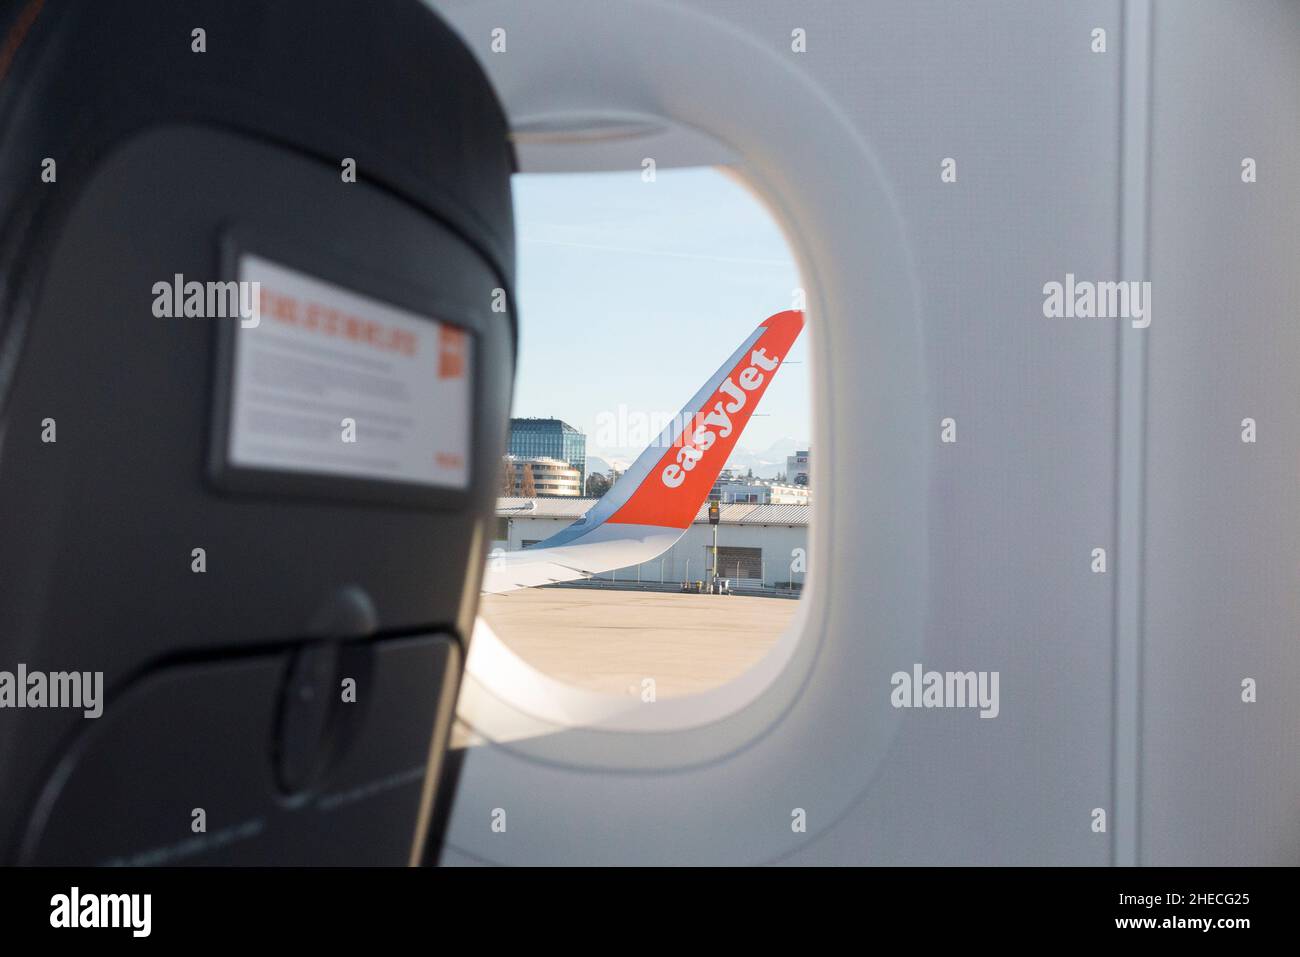 Sur les avions Airbus, les extensions verticales de pointes de ligne de type fin sont appelées « sharklet s ».« Shark let » sur un vol Easyjet / avion / avion en Europe.(128) Banque D'Images